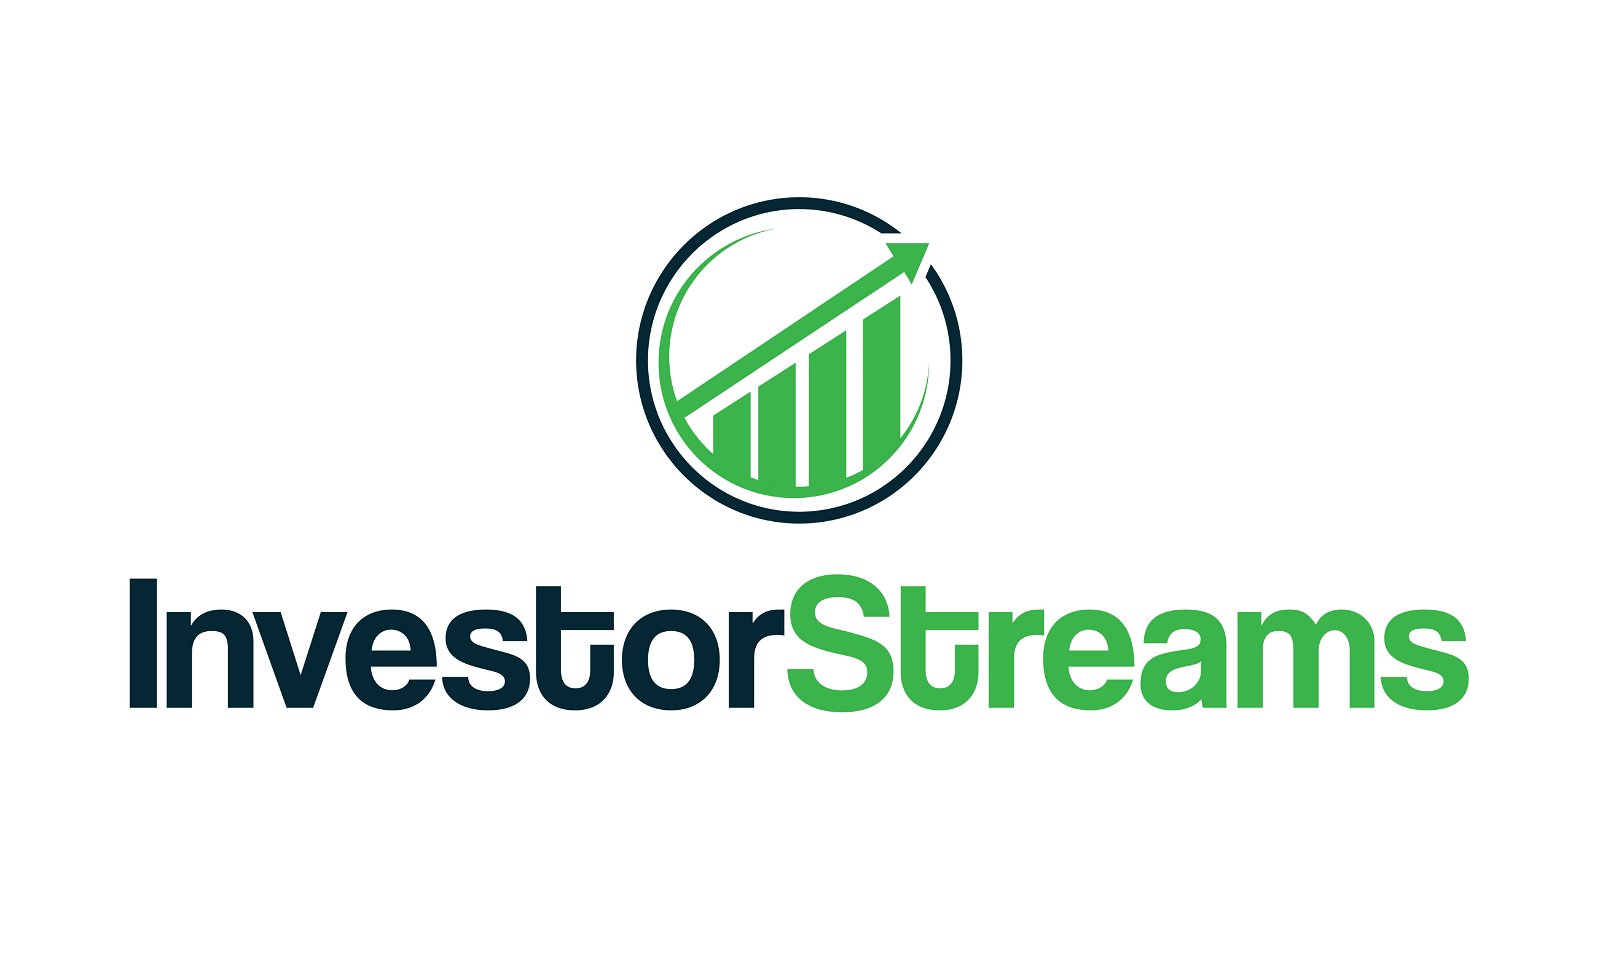 InvestorStreams.com - Creative brandable domain for sale